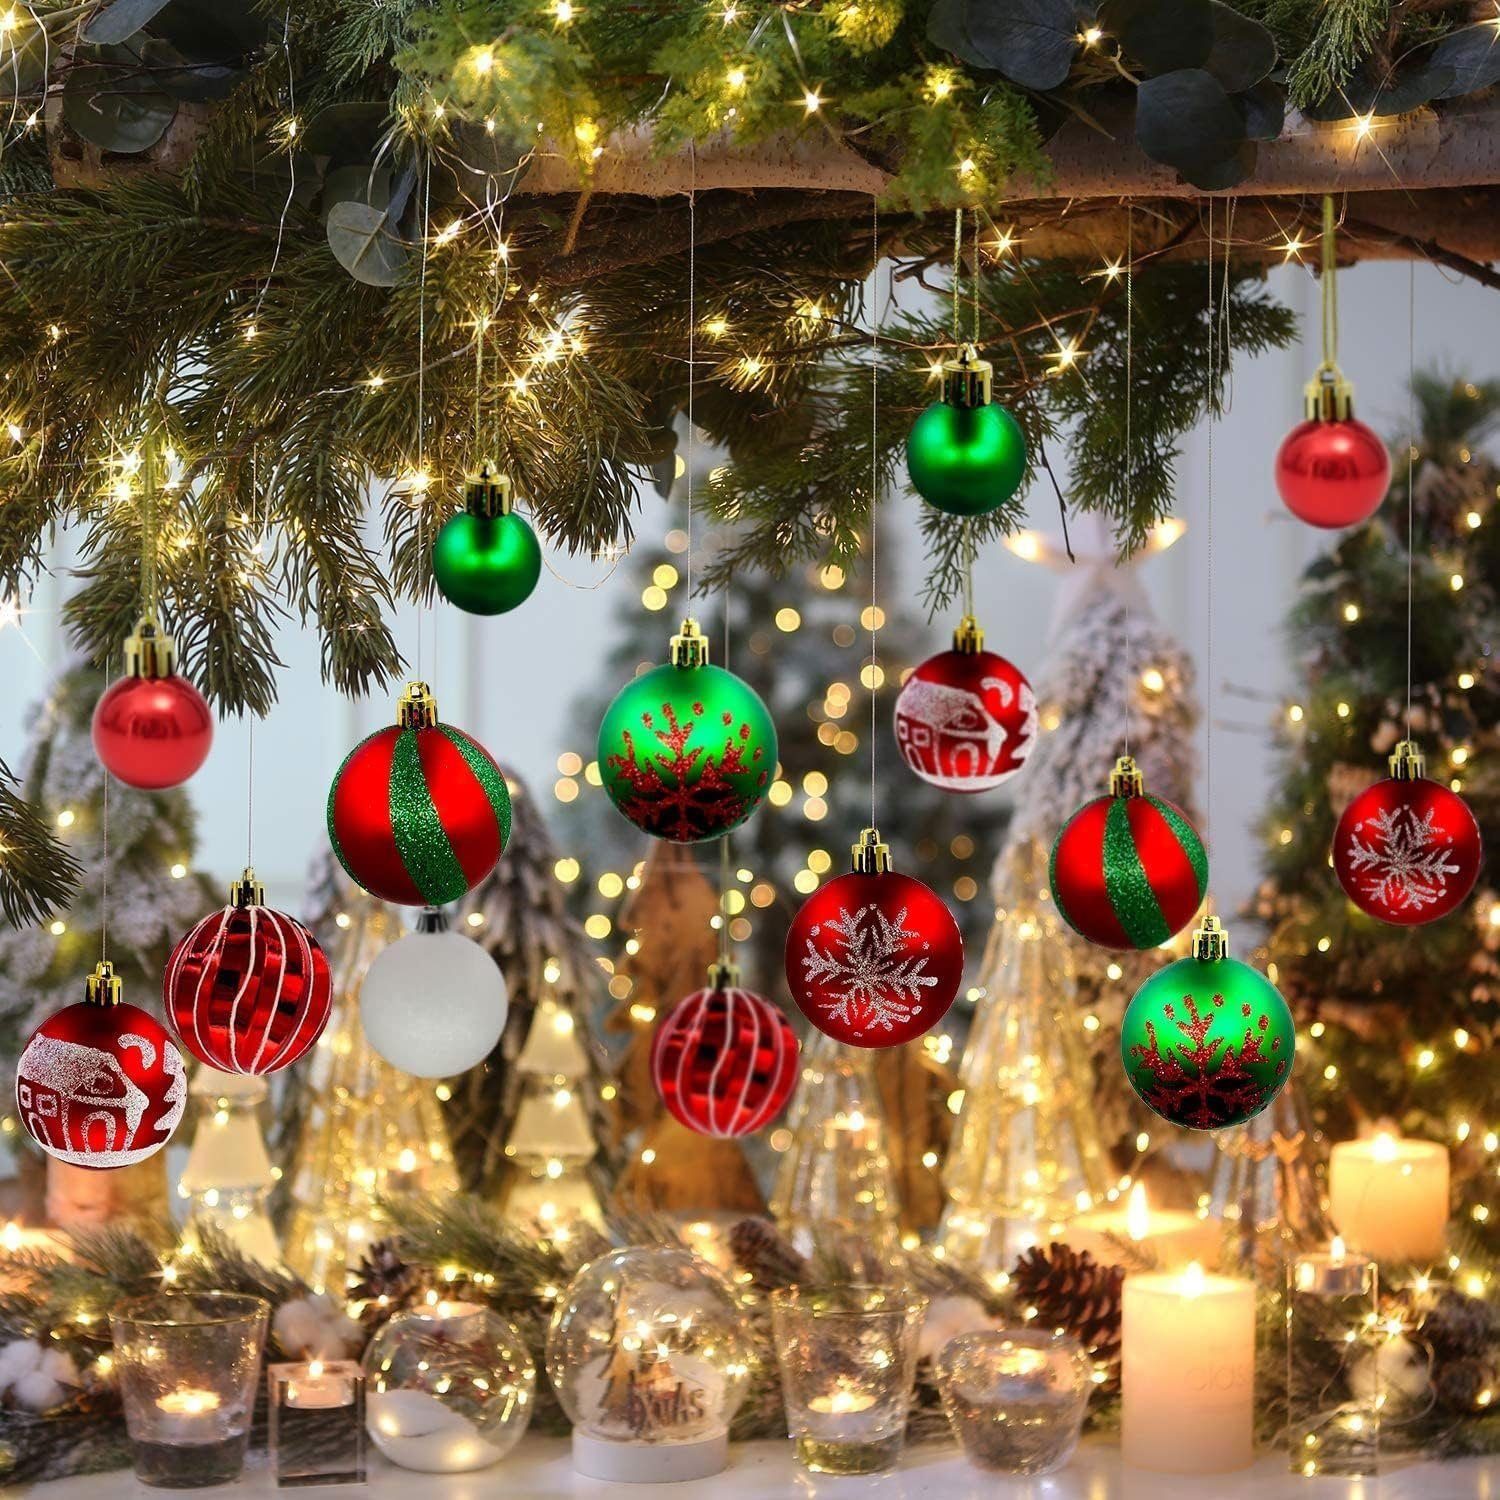 autolock Stück orange Weihnachtsbaumkugel Weihnachtsbaumkugel Ornamente 44 Weihnachtskugeln,